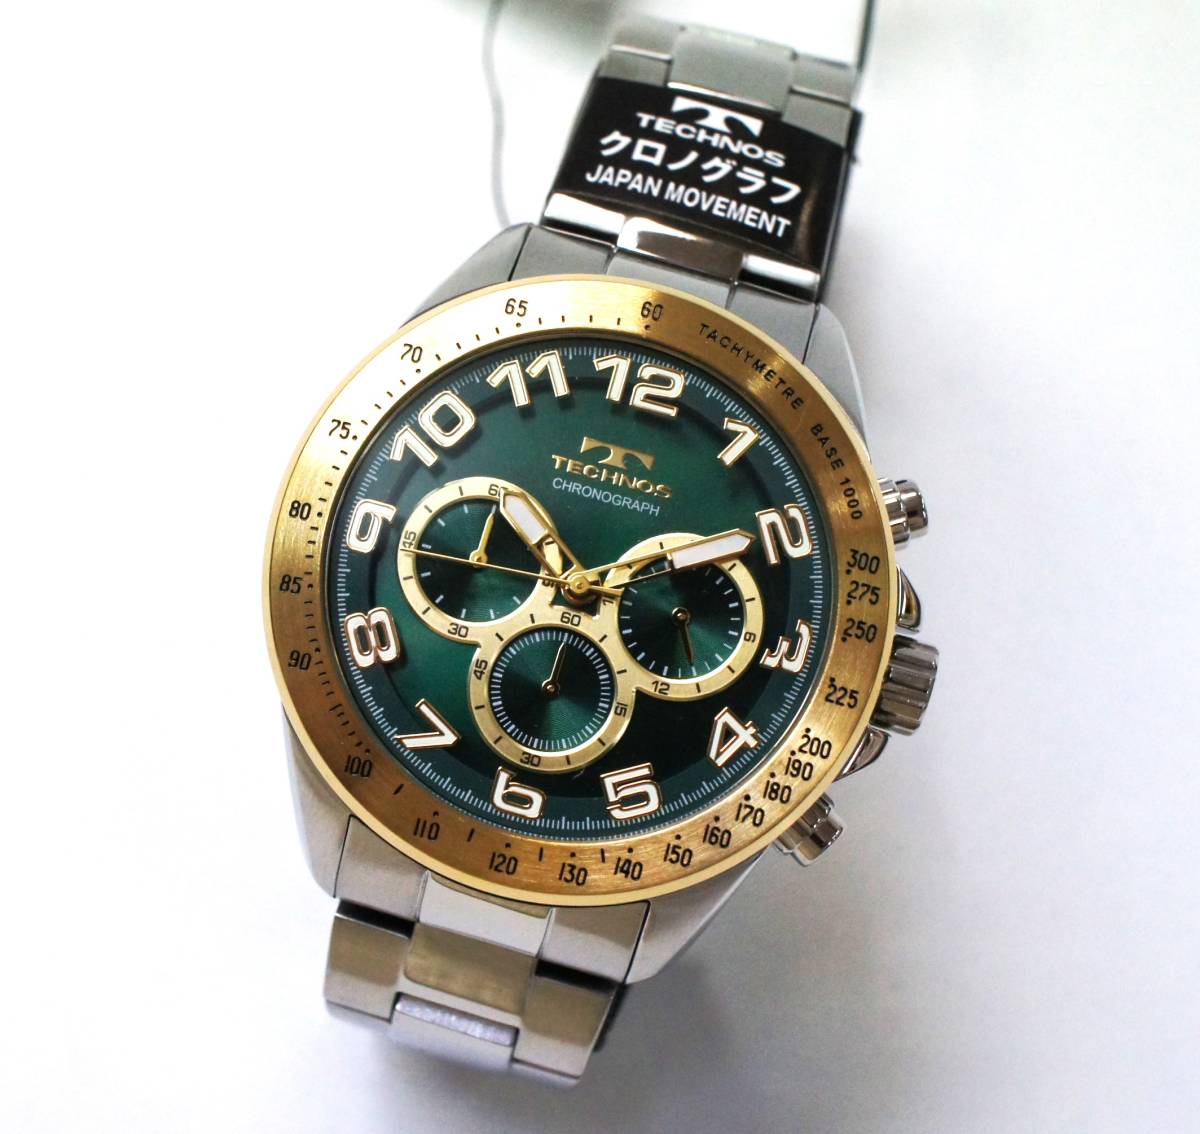 [ новый товар ] Tecnos хронограф часы 5 атмосферное давление водонепроницаемый T6B97GM зеленый 